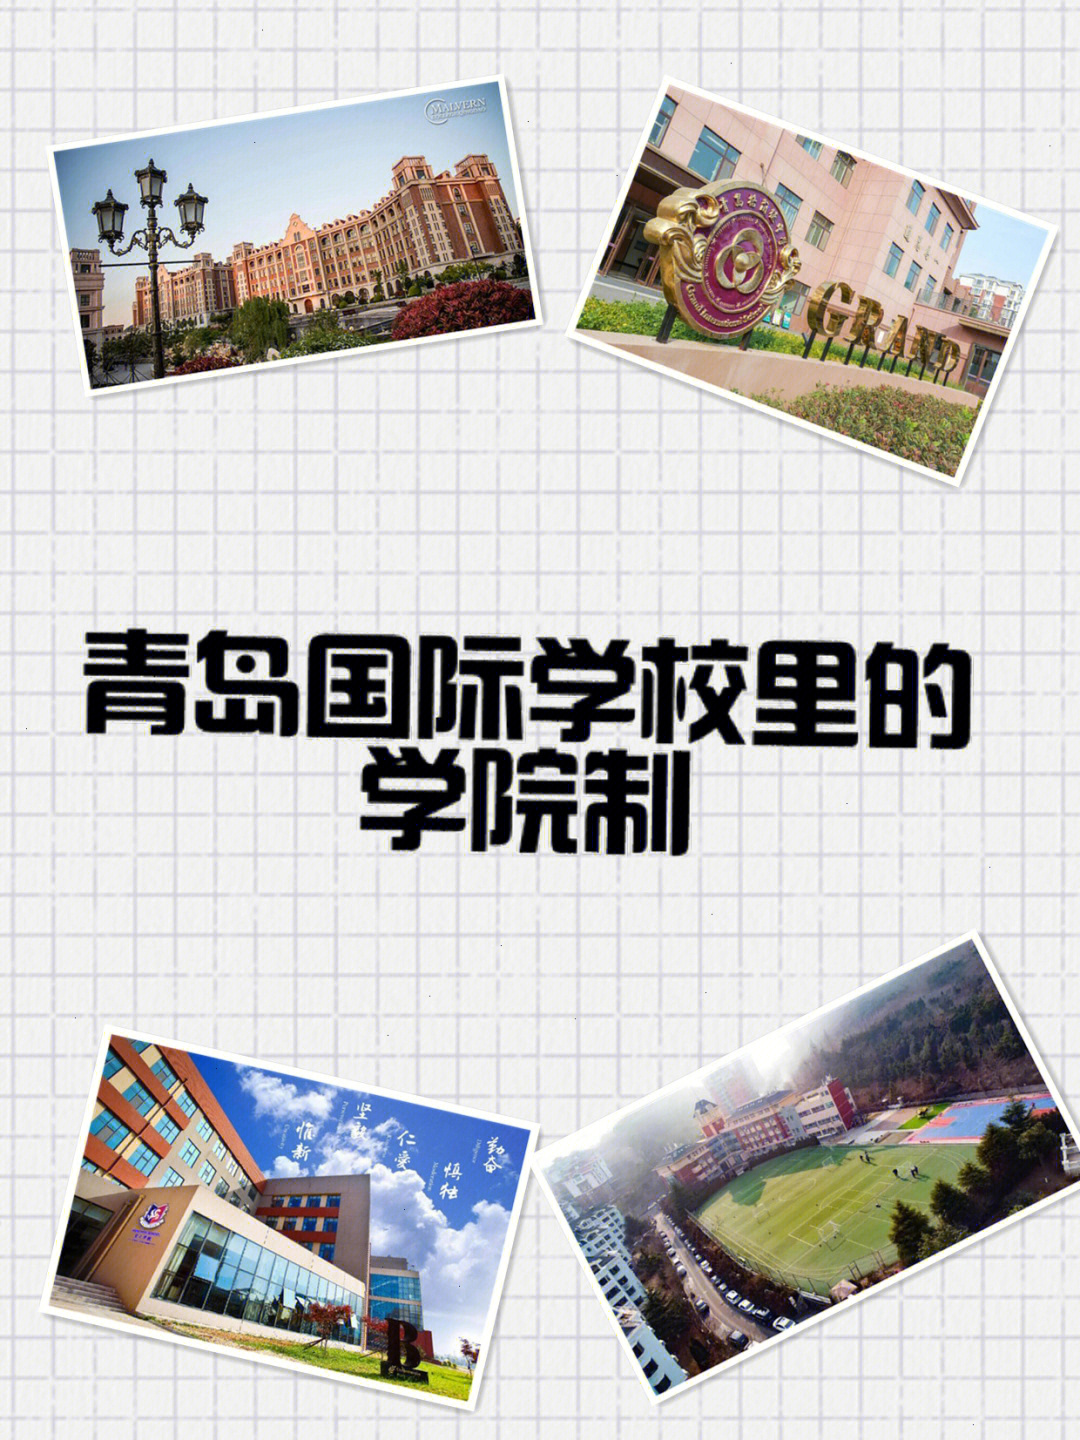 青岛也有国际学校实行了学院制:梅尔顿学校四大学院:house dragon